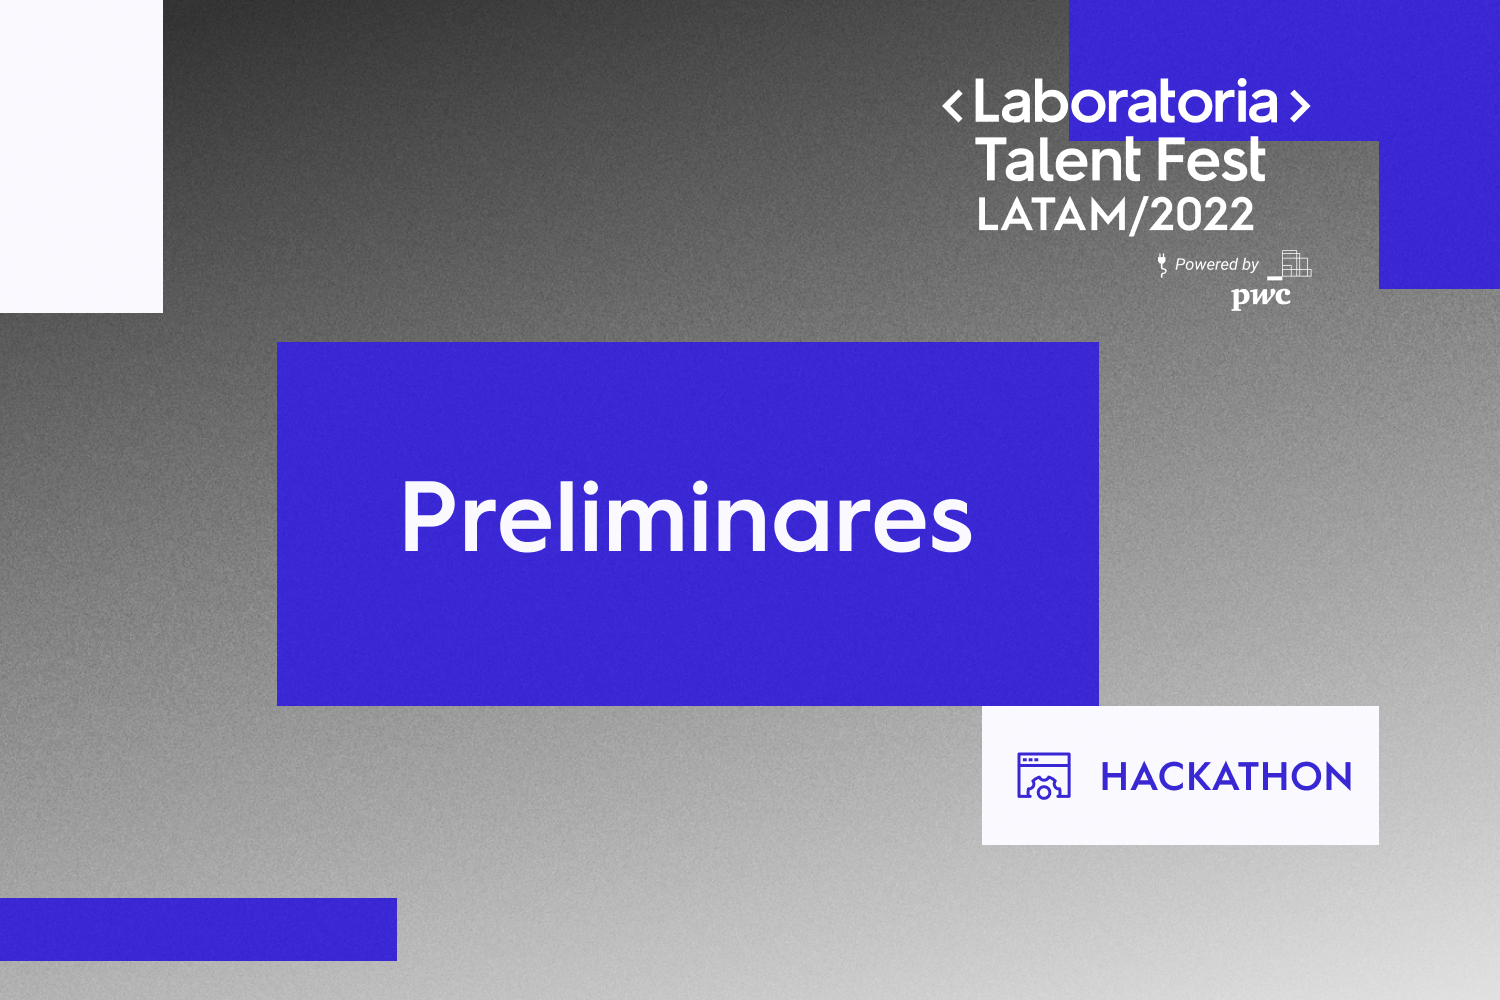 Accede aquí a las preliminares de la hackathon del Talent Fest Latam 2022 de Laboratoria.